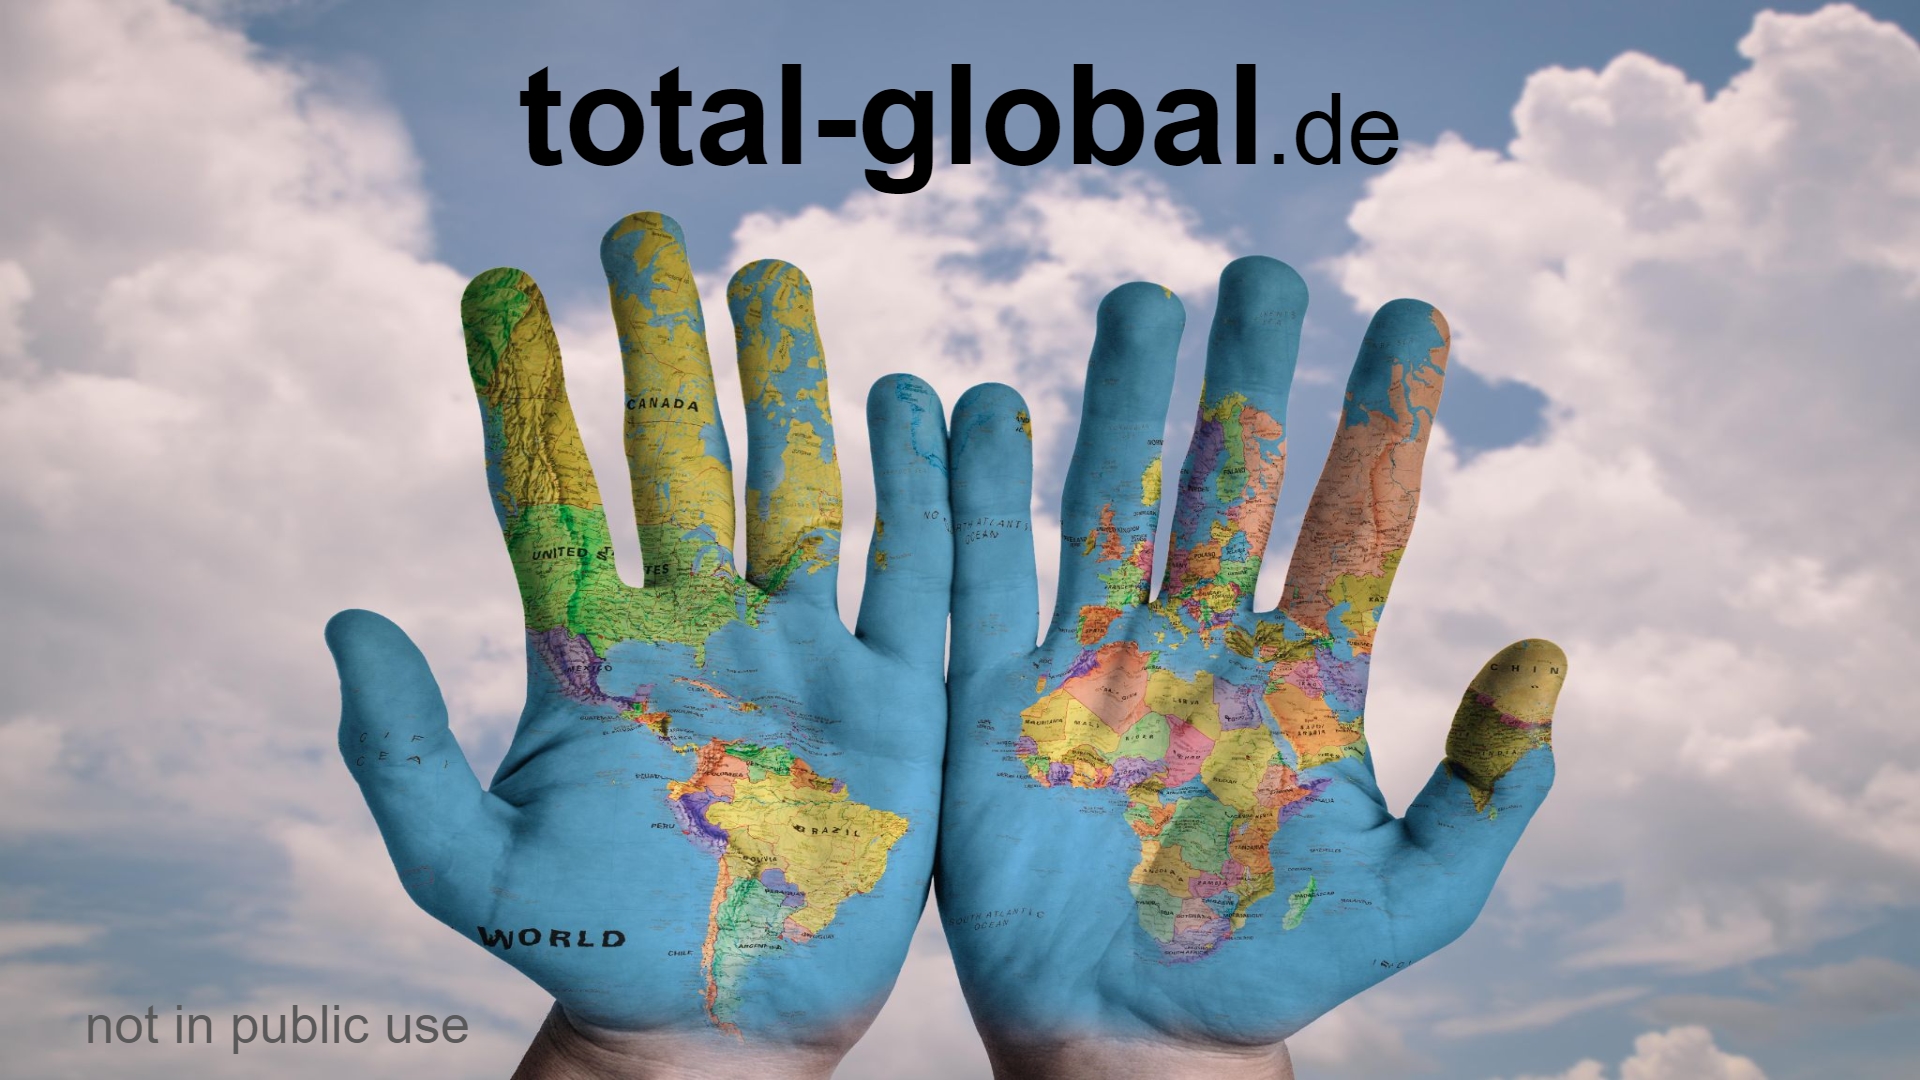 www.total-global.de